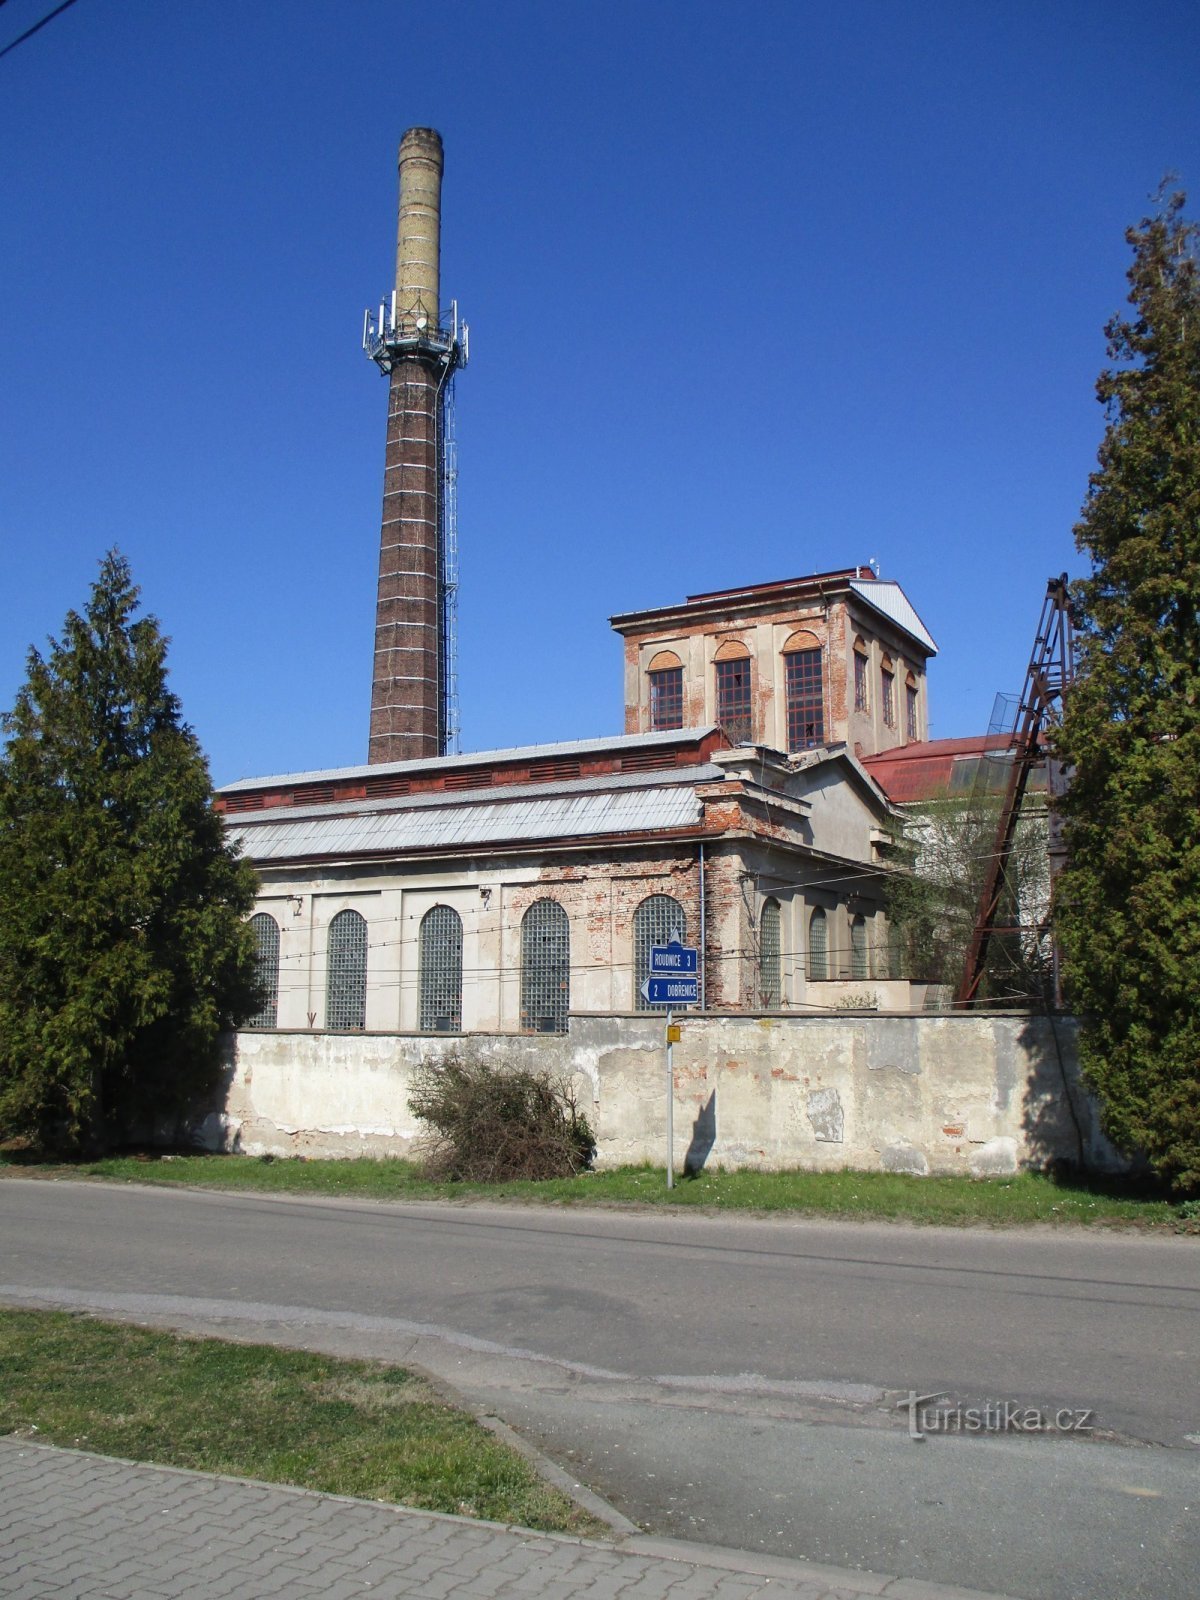 Nhà máy đường cũ (Syrovátka, 7.4.2020/XNUMX/XNUMX)